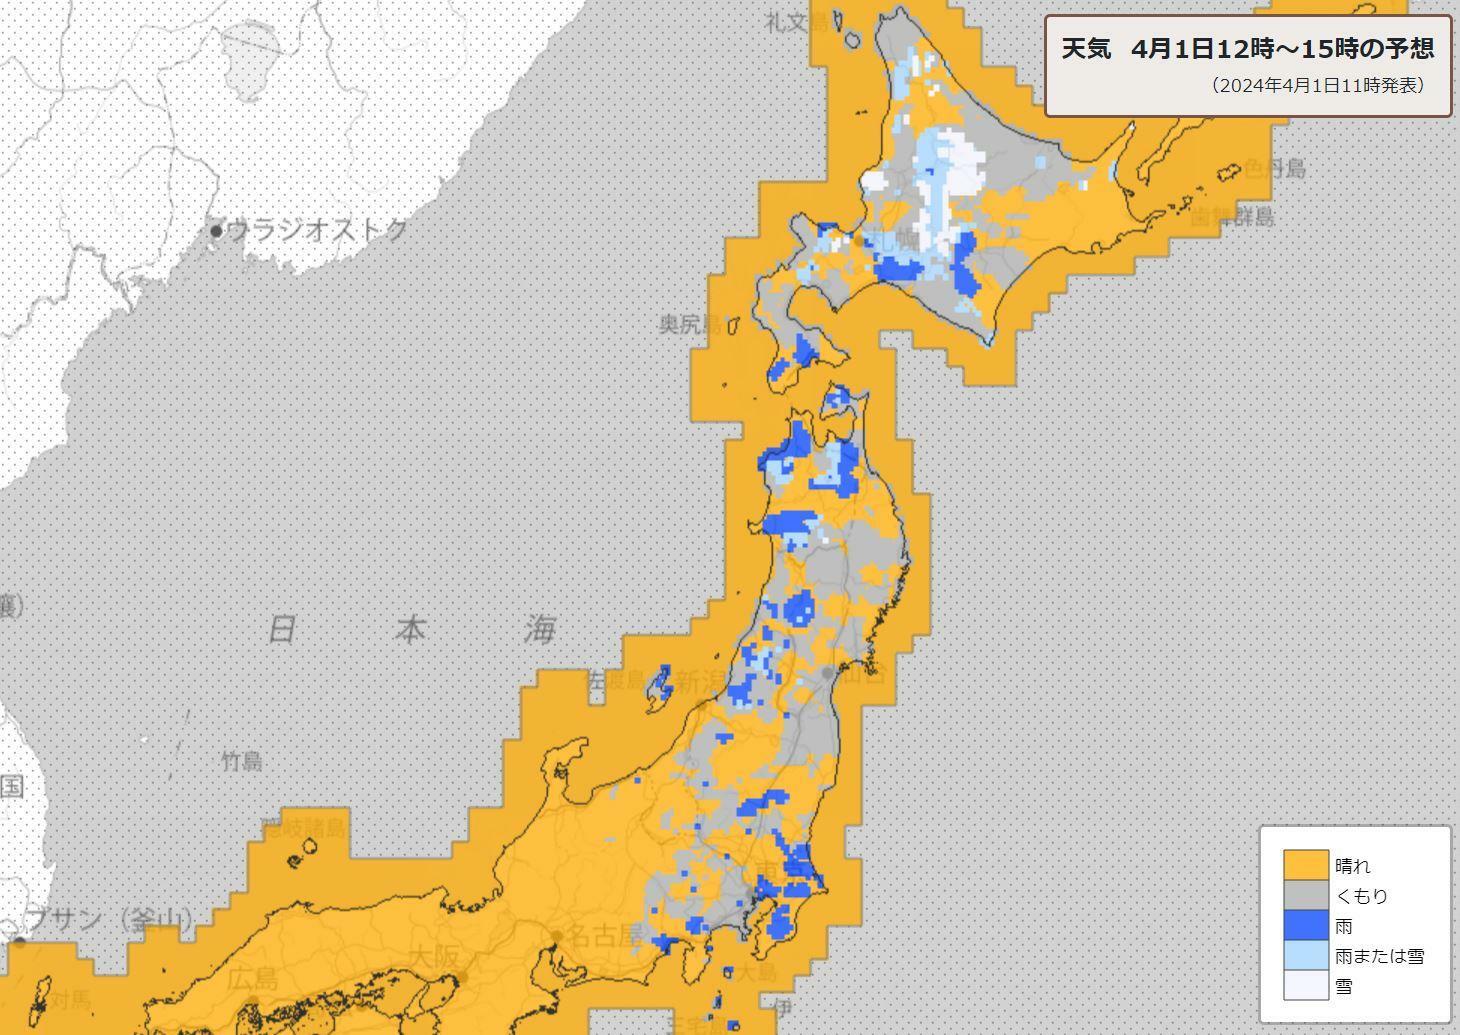 4月1日12時～15時の天気分布予報（気象庁HPより）。低気圧の影響で雨・雪が予想される北海道以外にも、本州でぽつぽつと青の「雨」の表示が点在する。